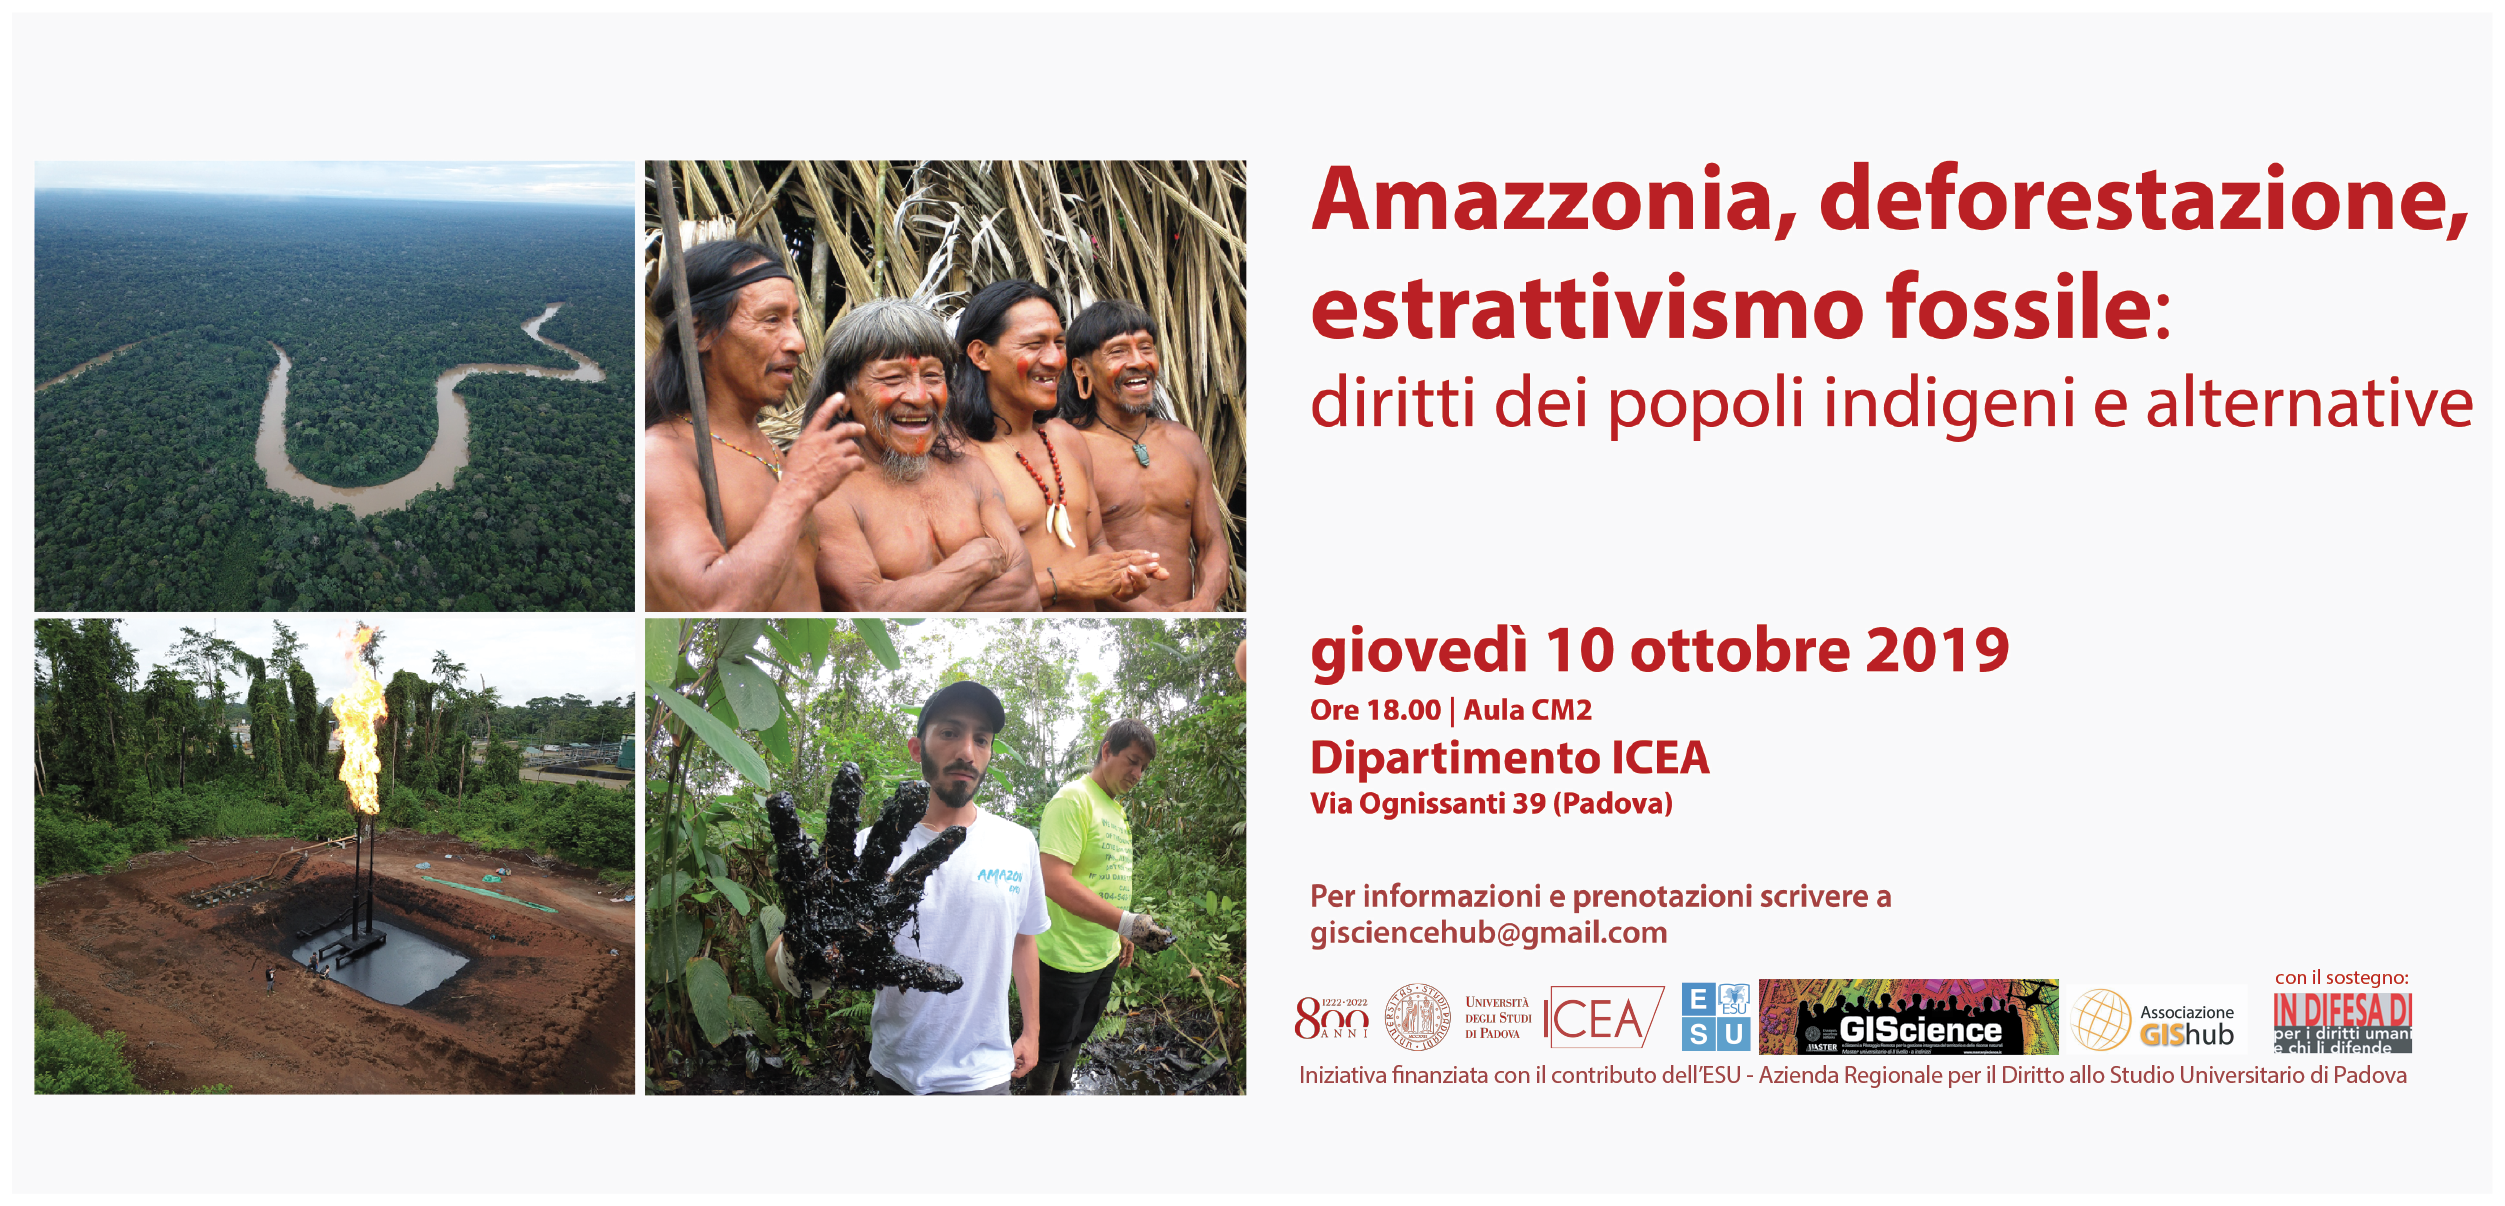 Amazzonia, deforestazione, estrattivismo fossile: diritti dei popoli indigeni e alternative